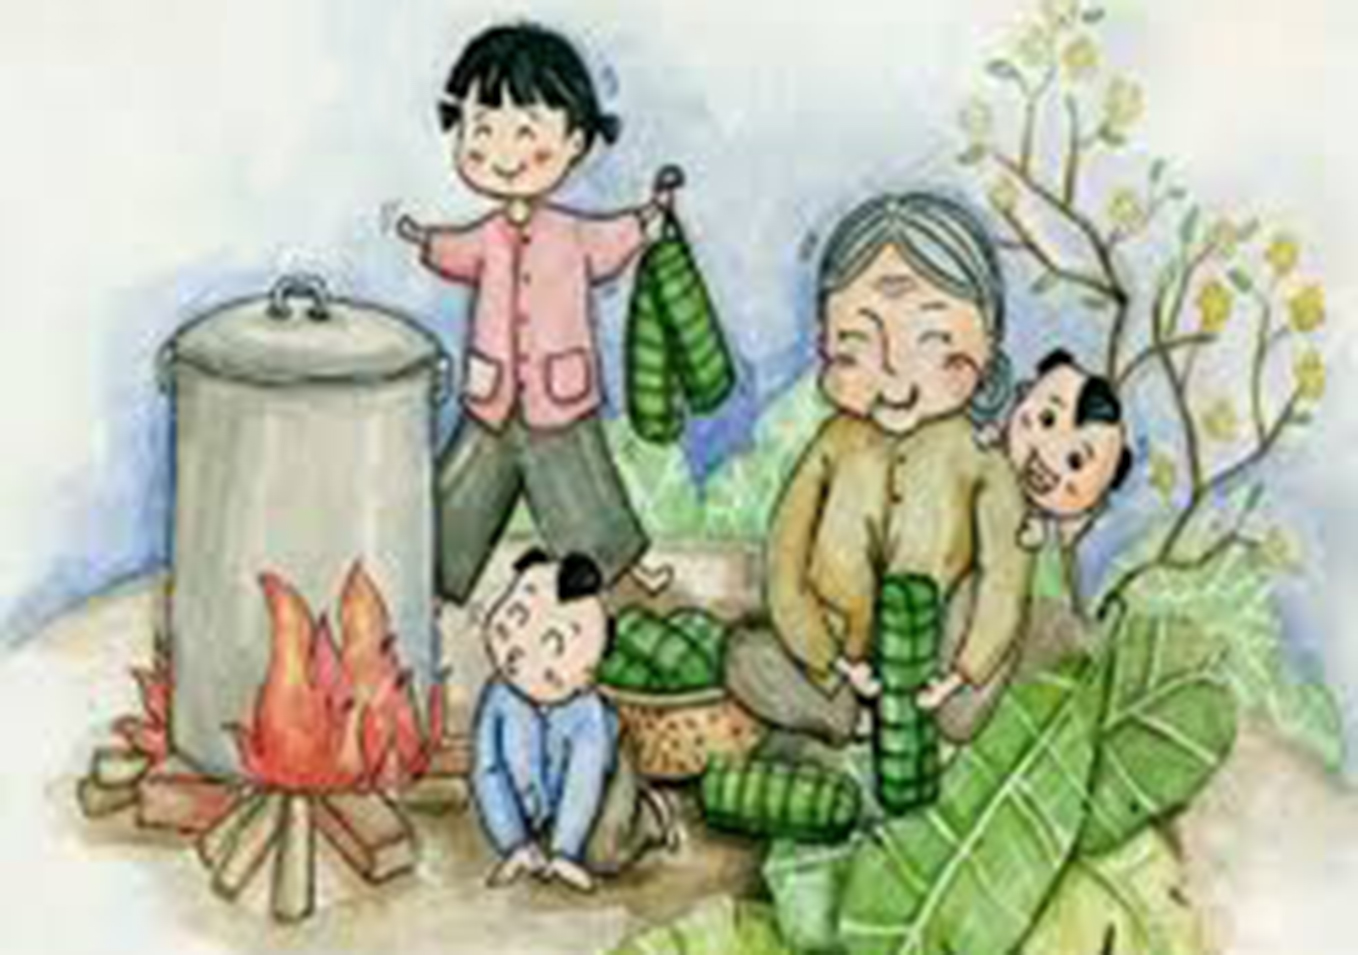 Bà Hai là một trong những nghệ nhân hàng đầu trong làng nghề làm bánh tráng phơi sương. Nhấn vào hình ảnh để quay lại quá khứ và nghe những câu chuyện tuyệt vời về cách bà Hai truyền lại bí quyết làm bánh tráng phổi sương cho những thế hệ kế tiếp.